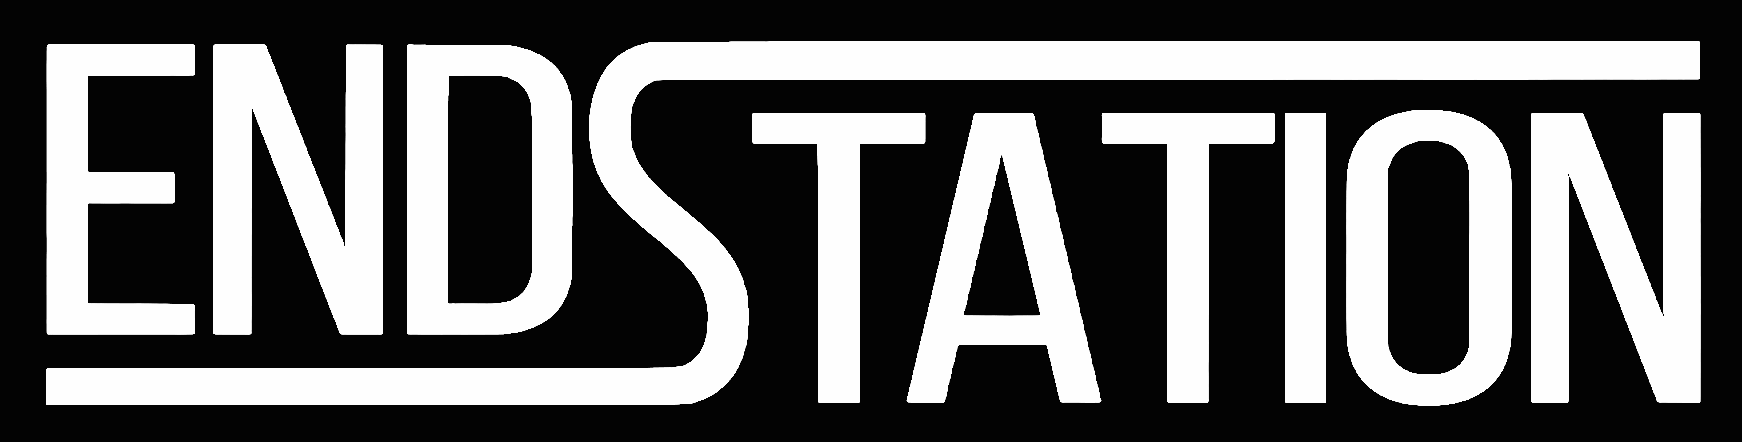 Endstation Logo